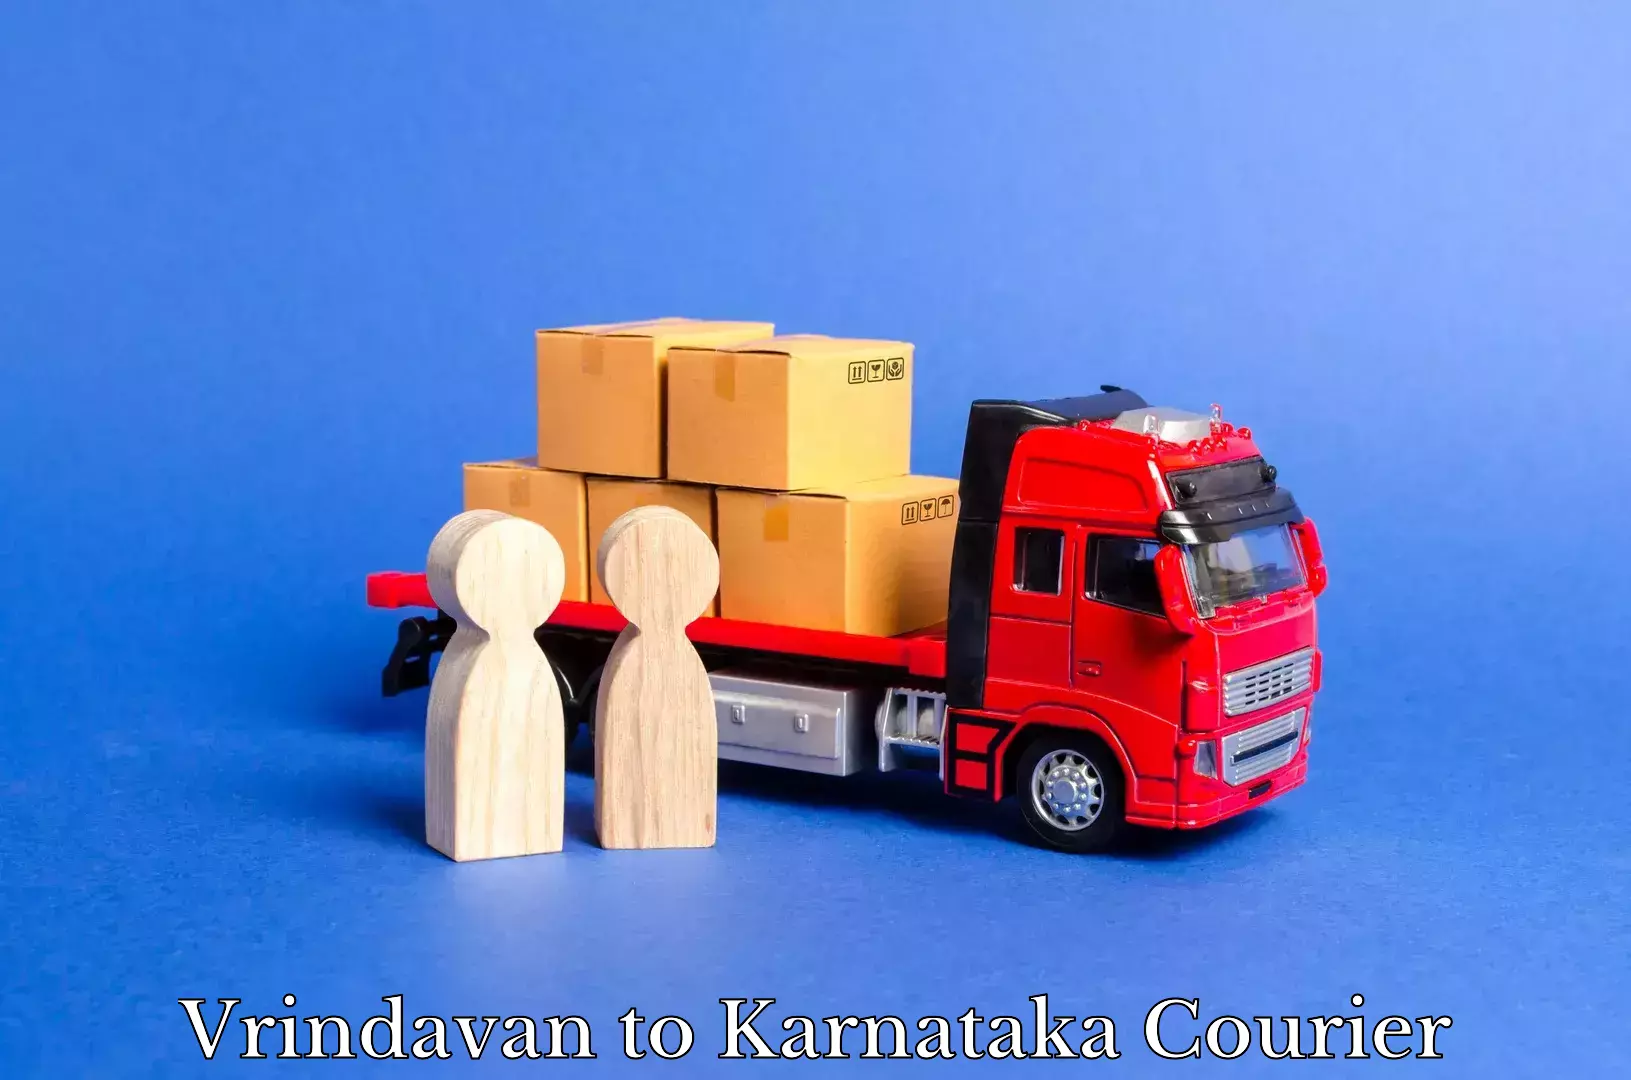 Package delivery network Vrindavan to Karnataka